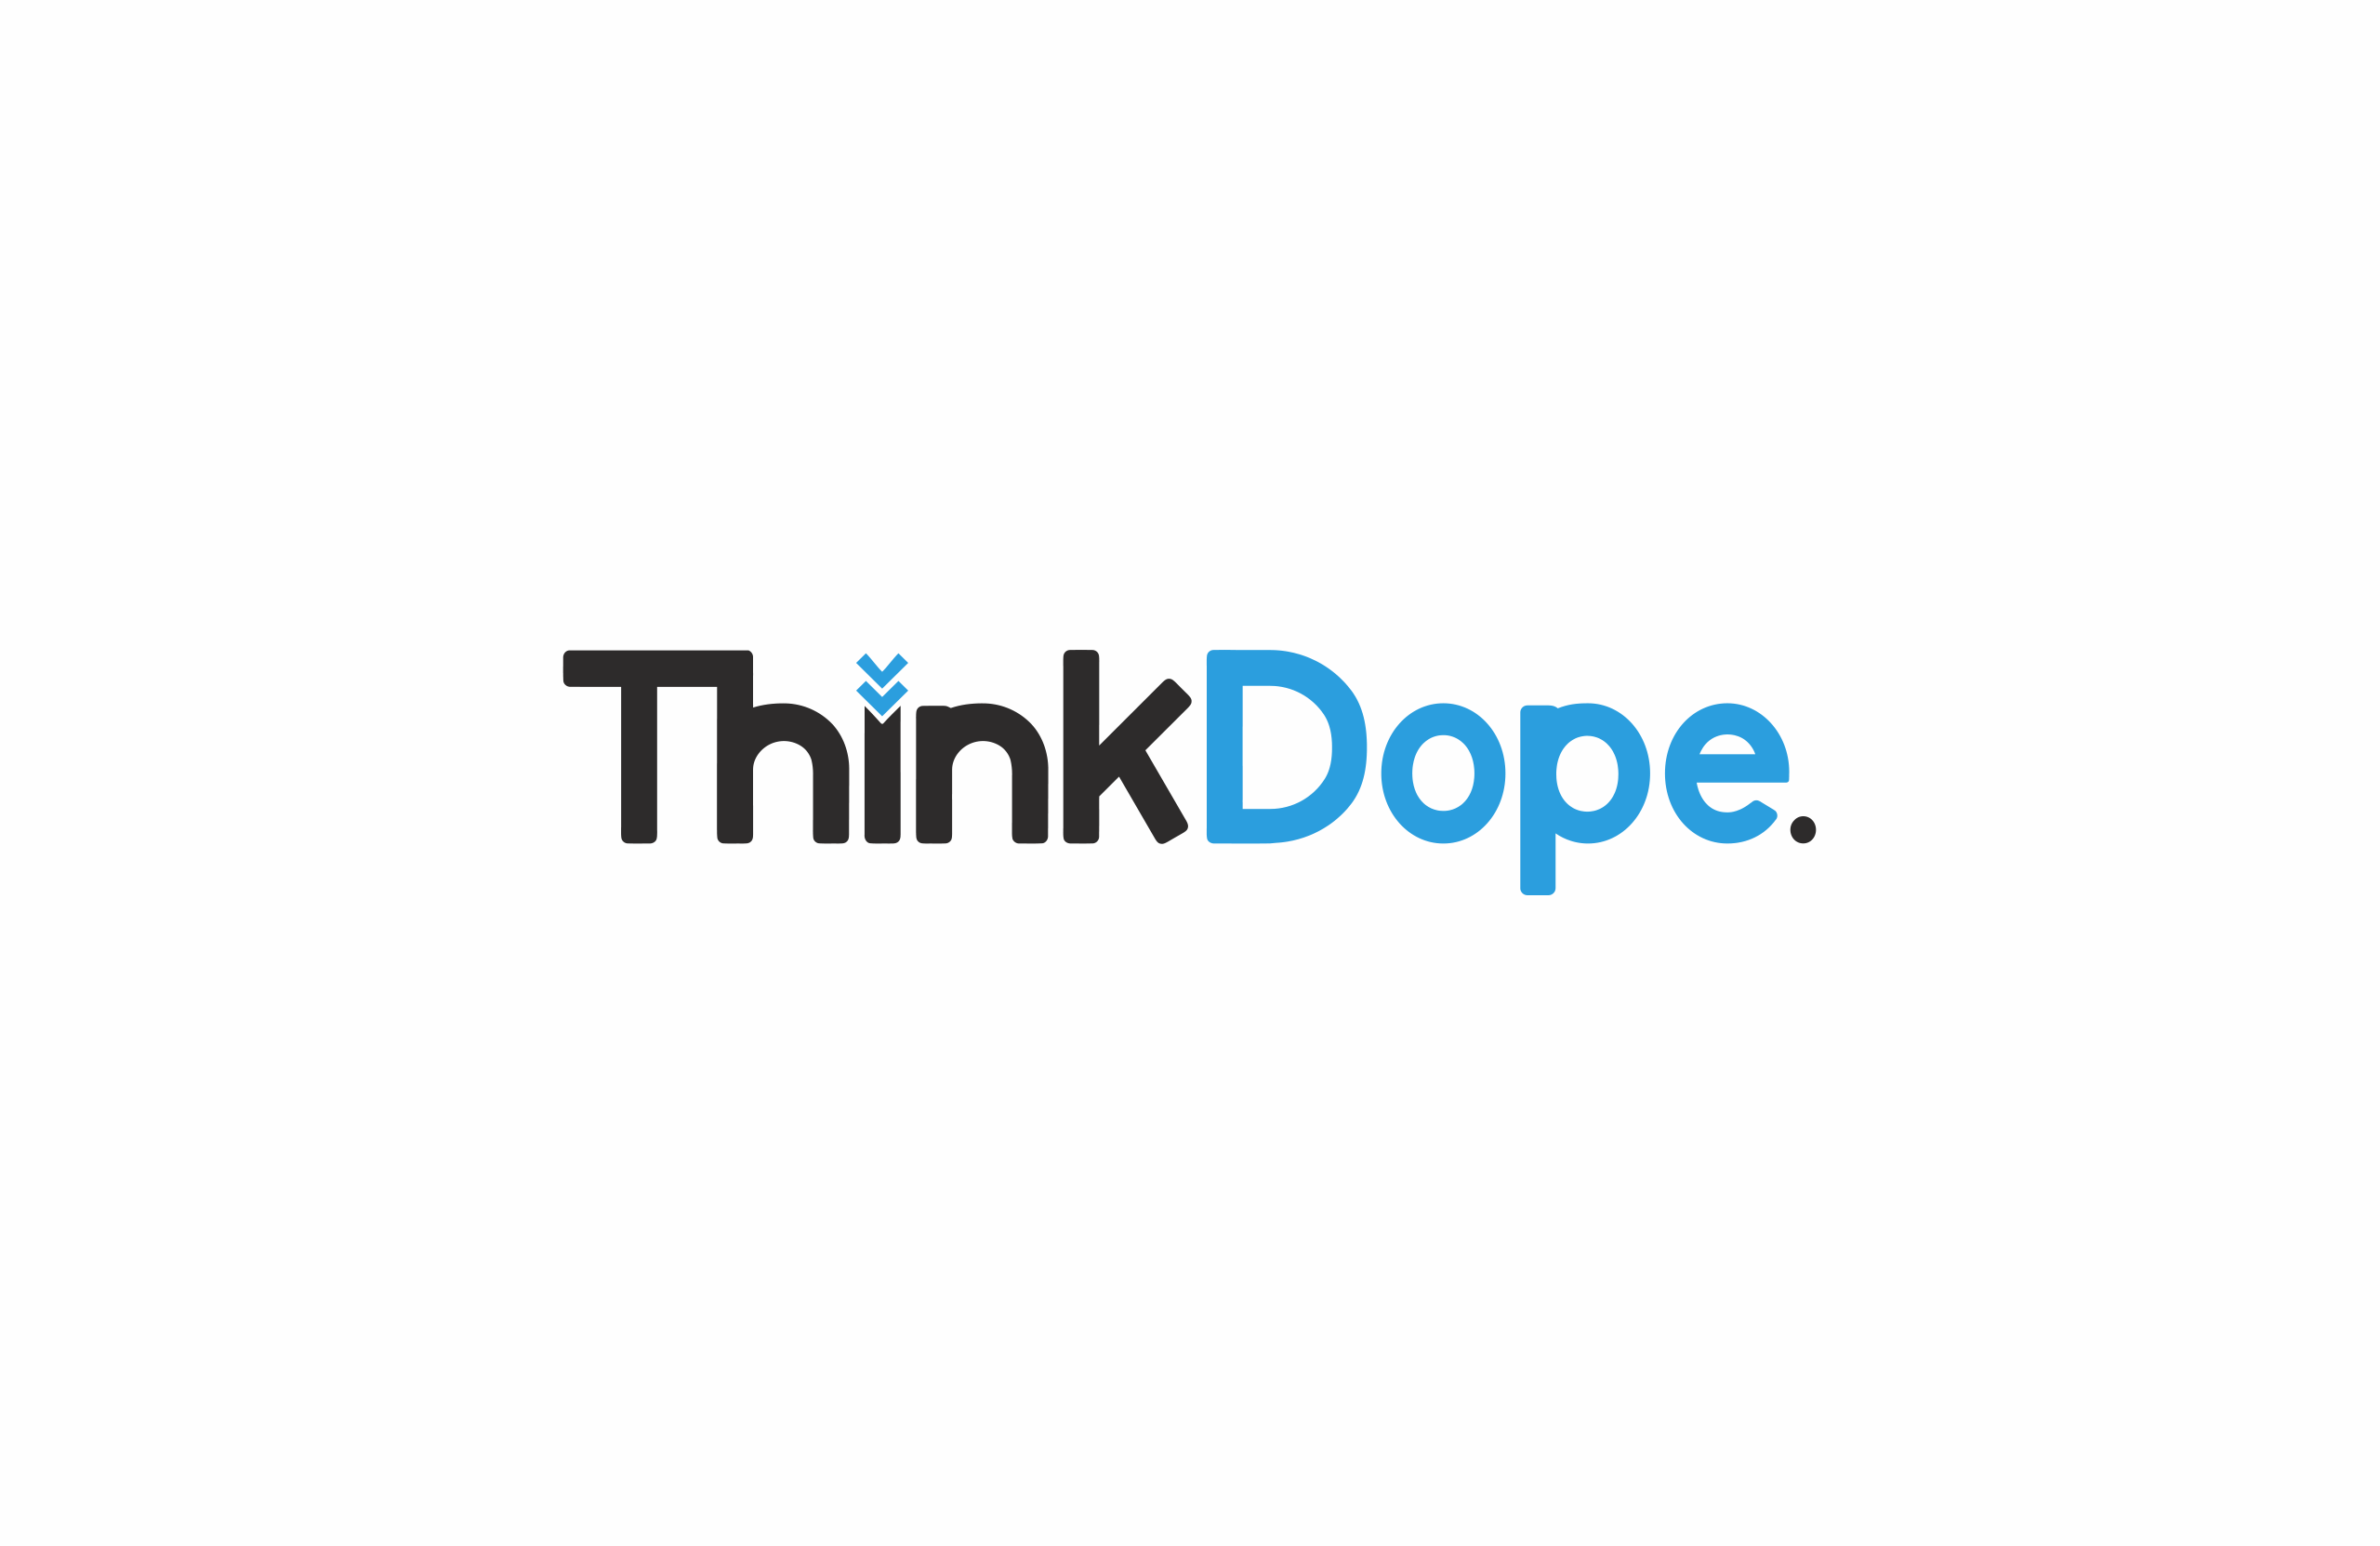 ThinkDope Logo by Garett Southerton, Creative Brand Strategist of Garett® based in Long Island, New York